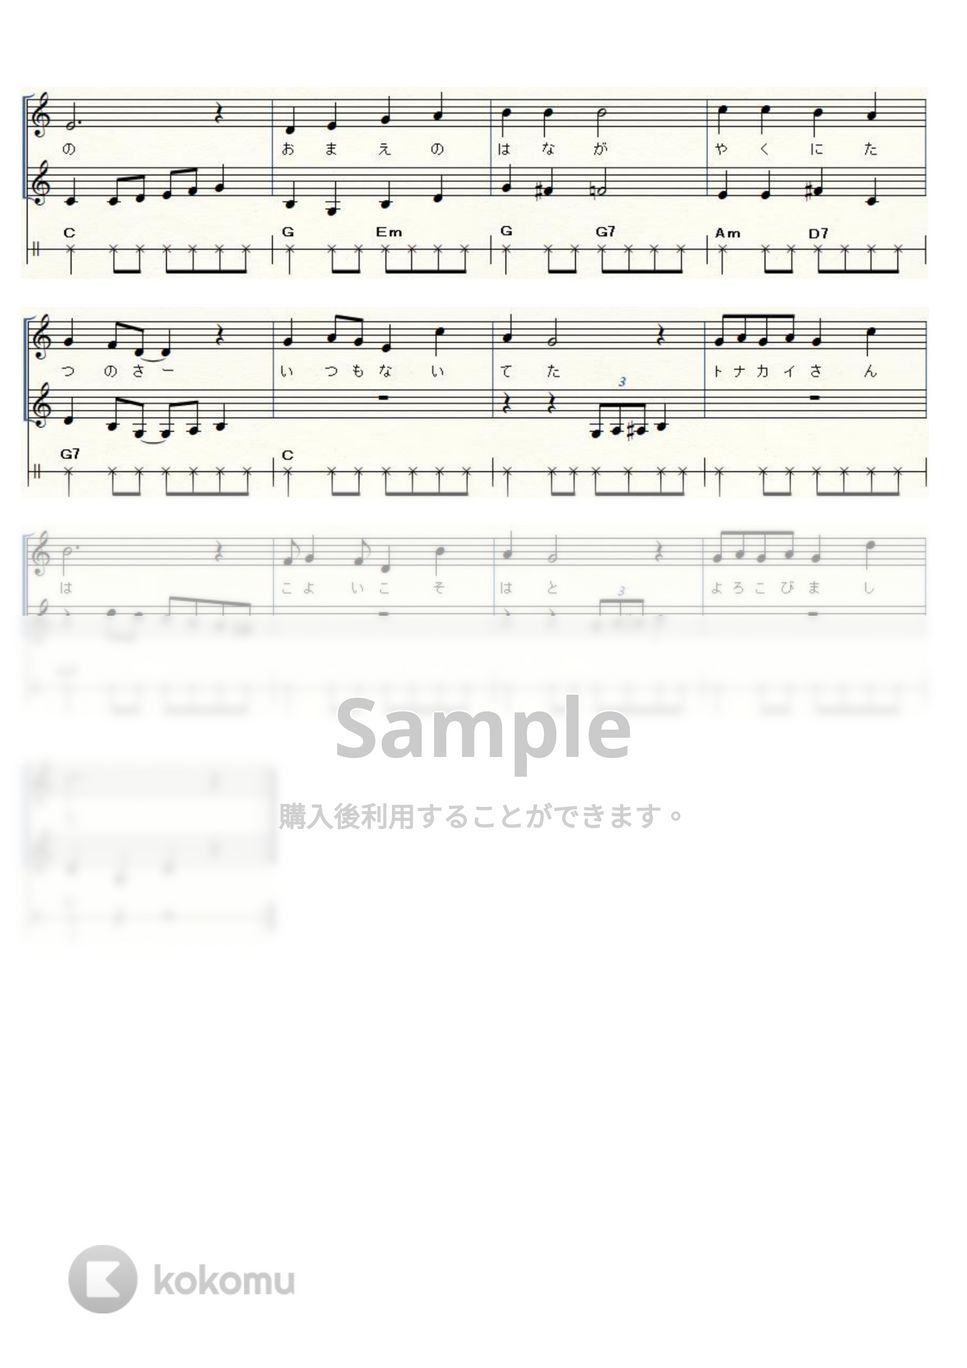 マークス - 赤鼻のトナカイ (ウクレレ三重奏) by ukulelepapa